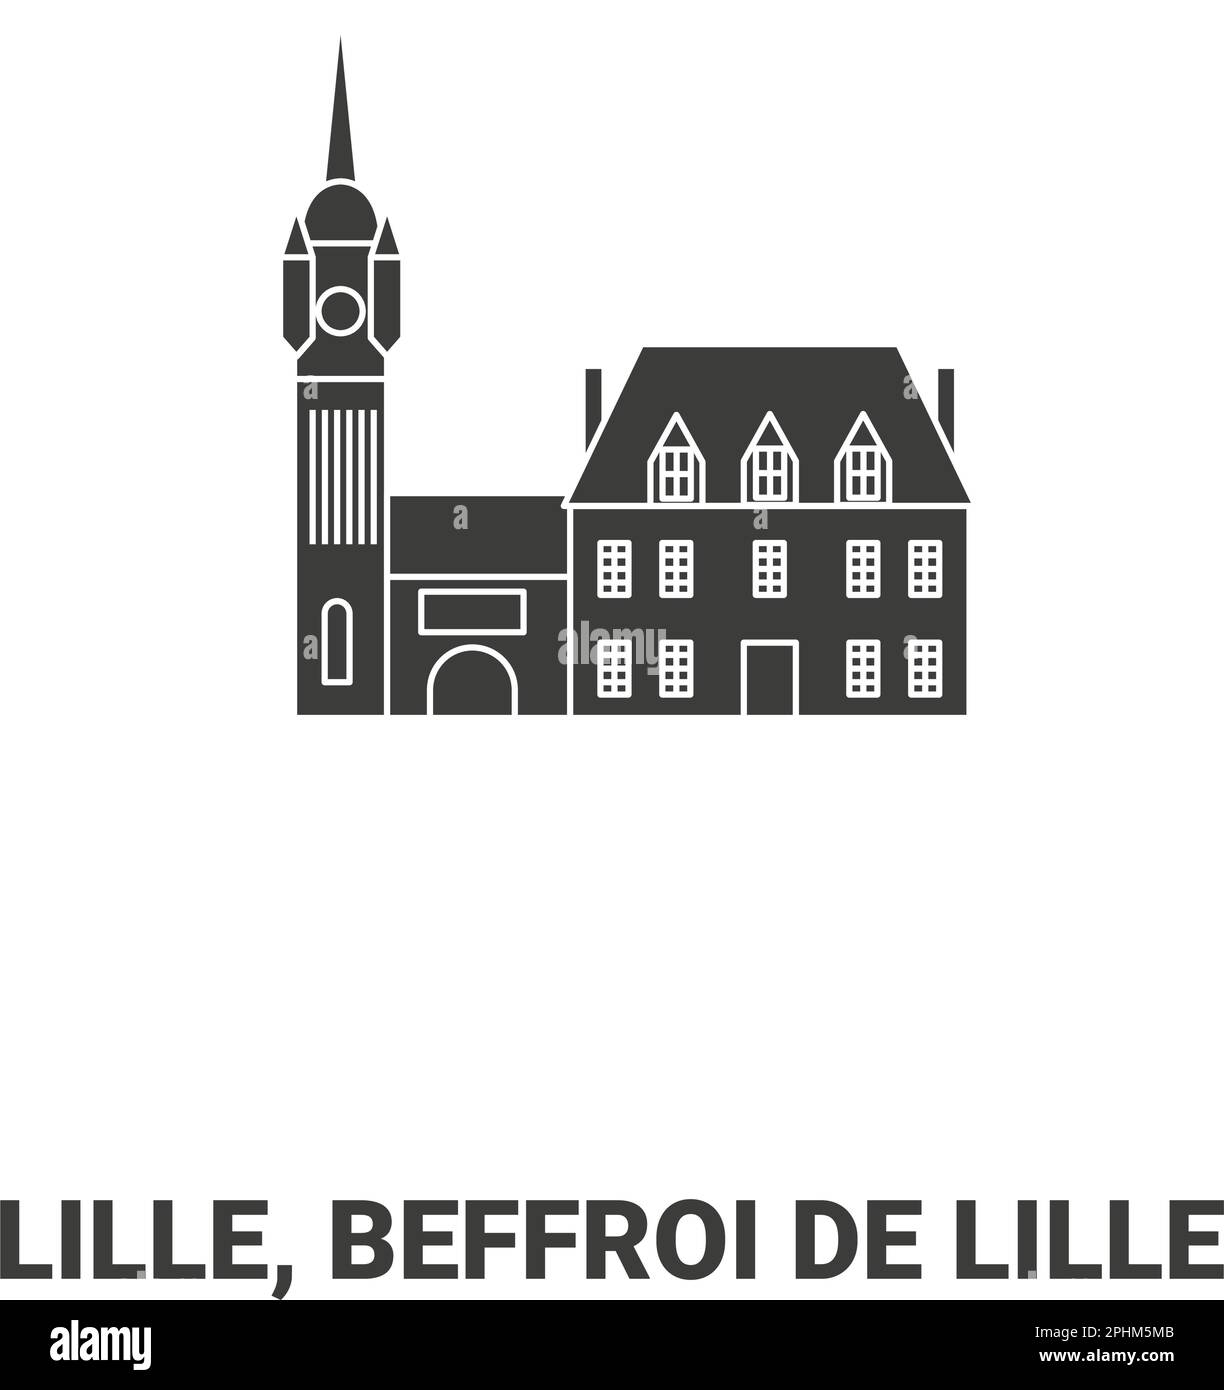 France, Lille, Beffroi De Lille, travel landmark vector illustration Stock Vector